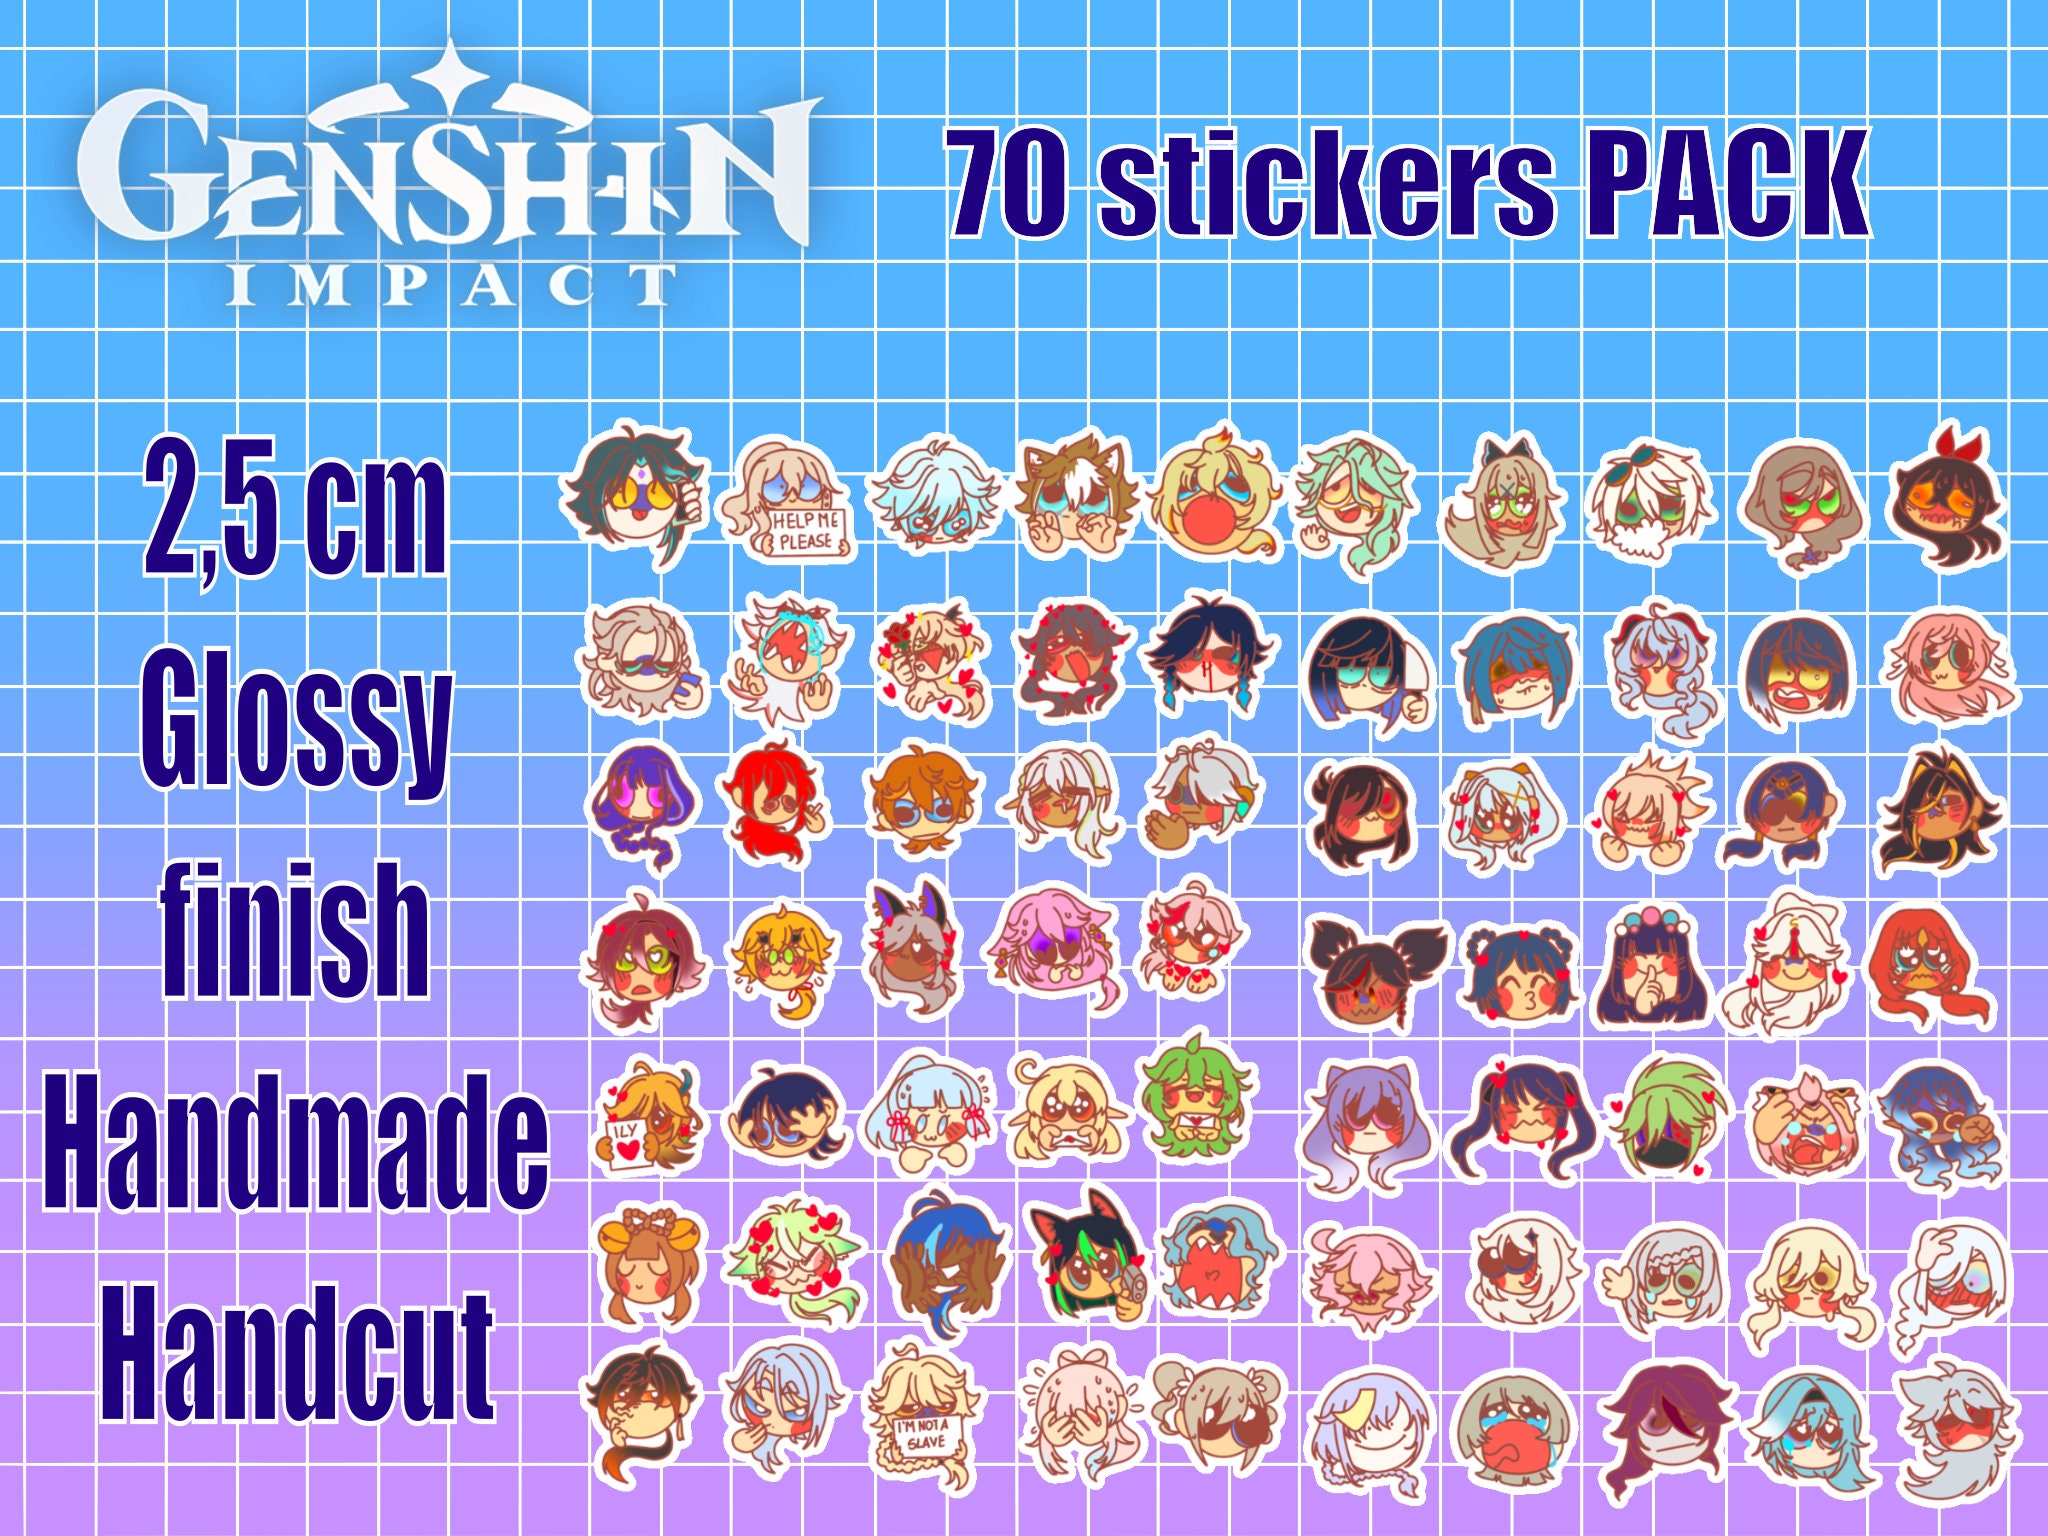 CSM Cursed Emojis Stickers & Sticker Sheet 